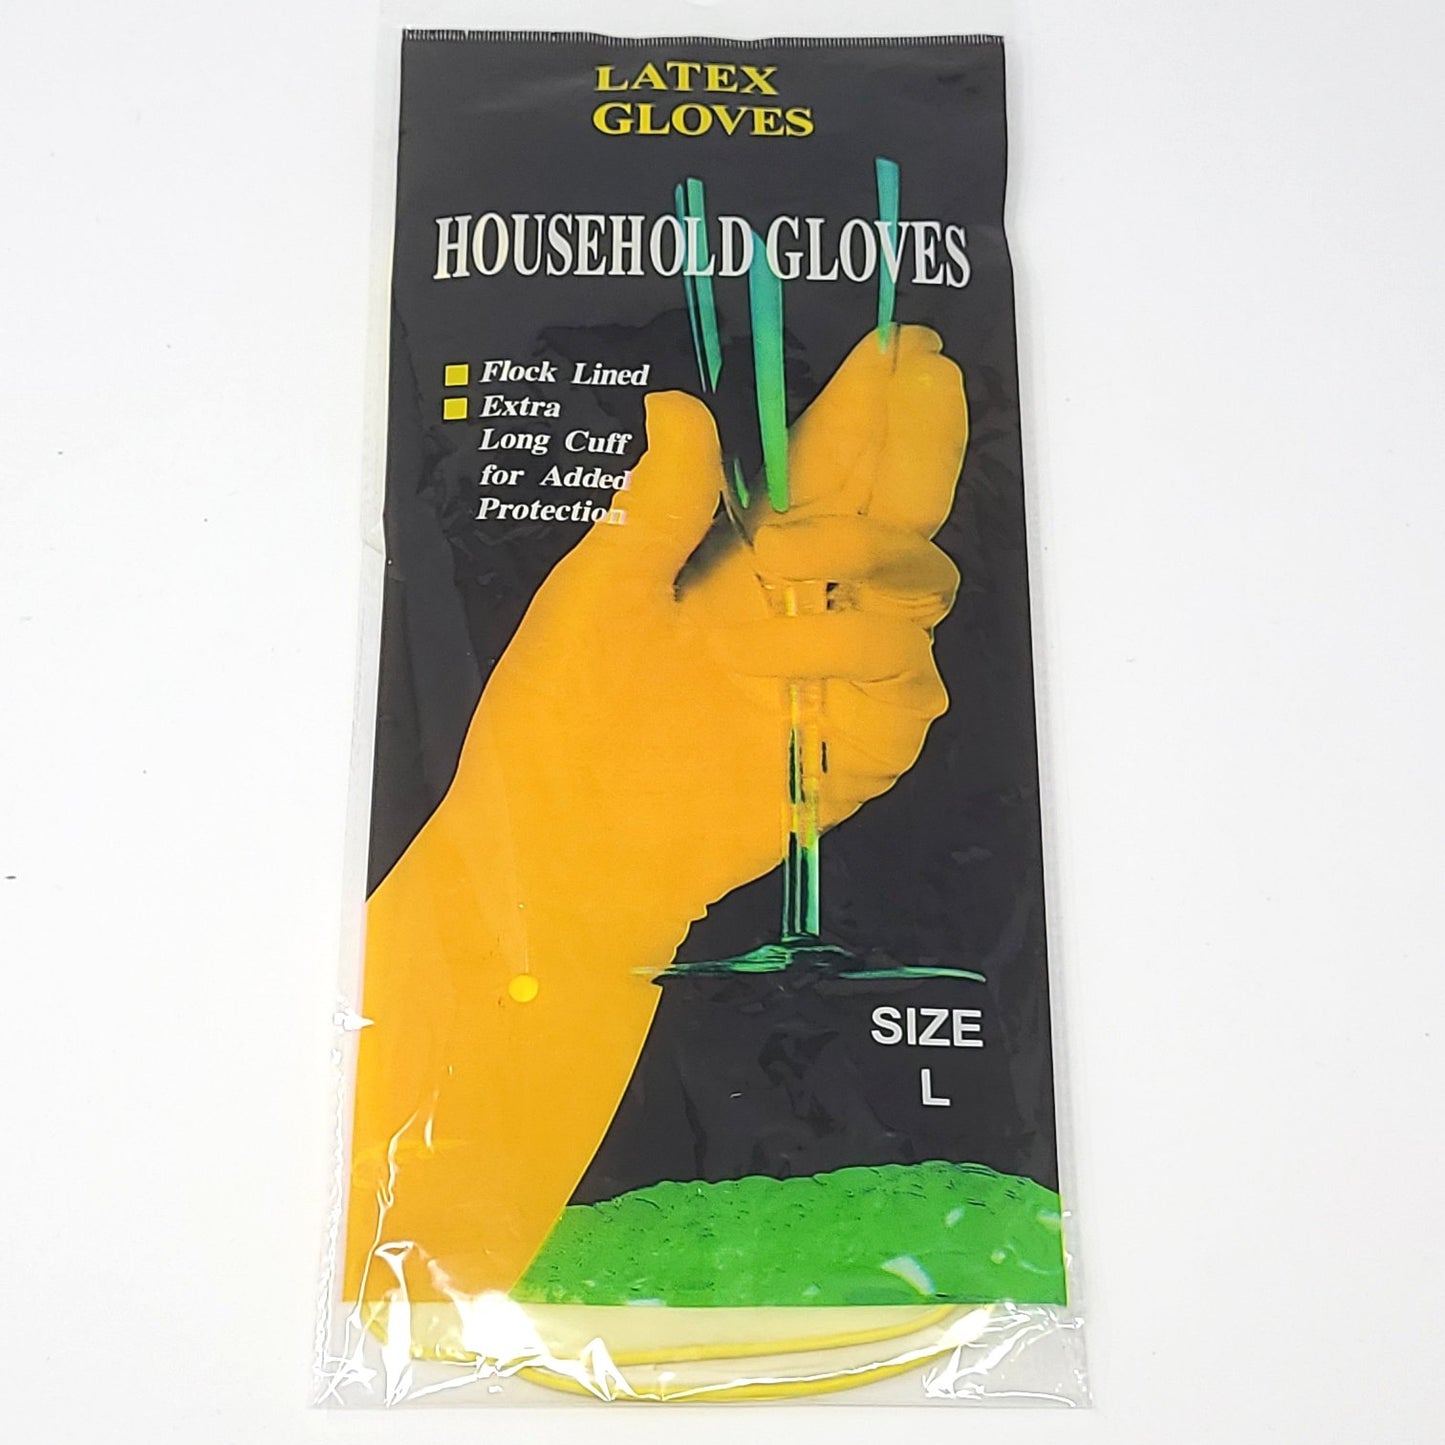 Household Gloves (Random Color)